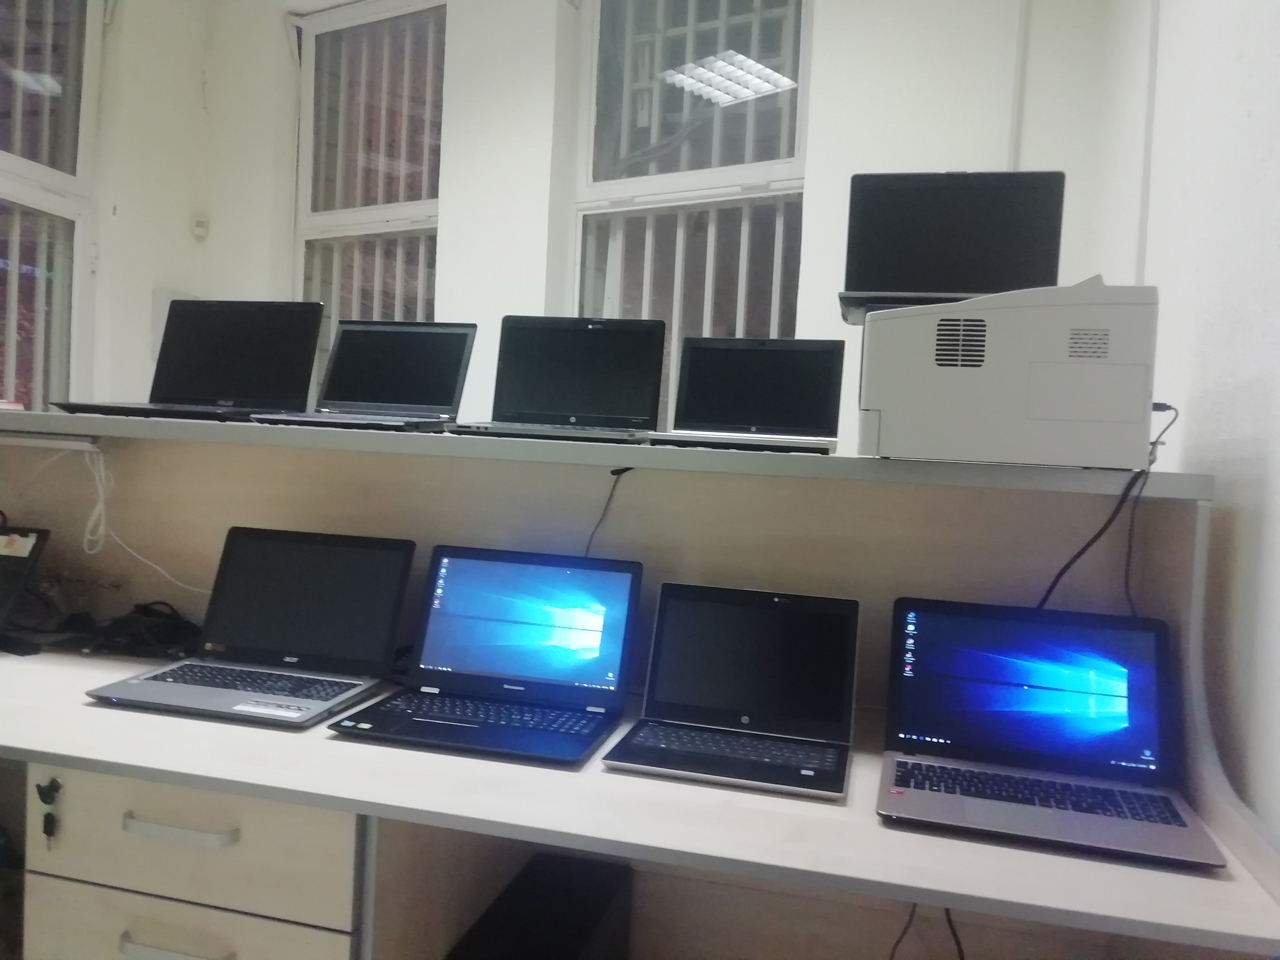 Slika 2 - BG COMPUTERS - SERVIS RAČUNARA NOVI BEOGRAD Servisi računara, laptopova Beograd